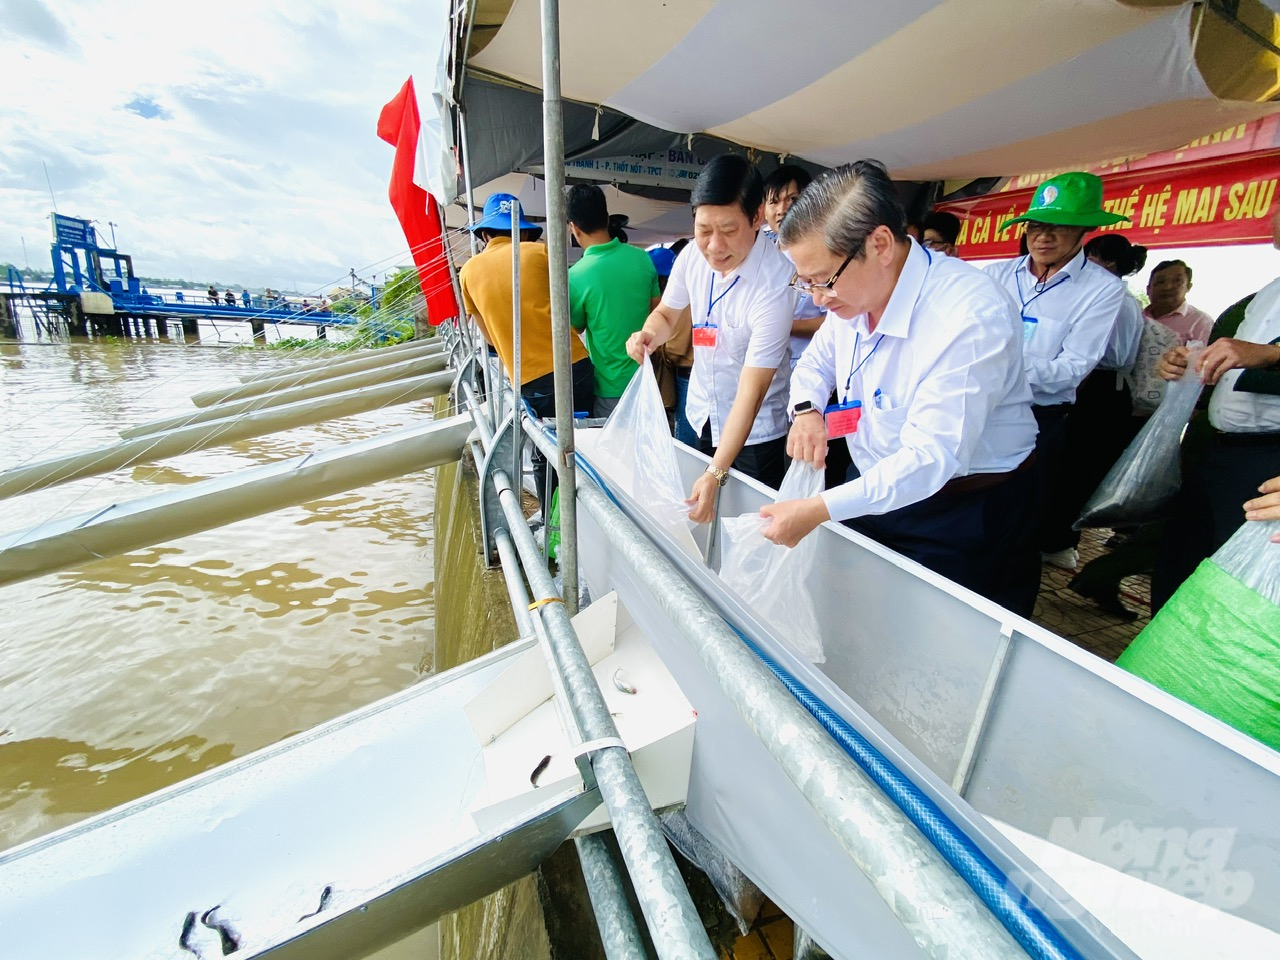 Ông Trần Việt Trường, Chủ tịch UBND TP Cần Thơ (phải) thực hiện nghi thức thả cá giống xuống sông Hậu sáng ngày 1/9. Ảnh: Lê Hoàng Vũ.